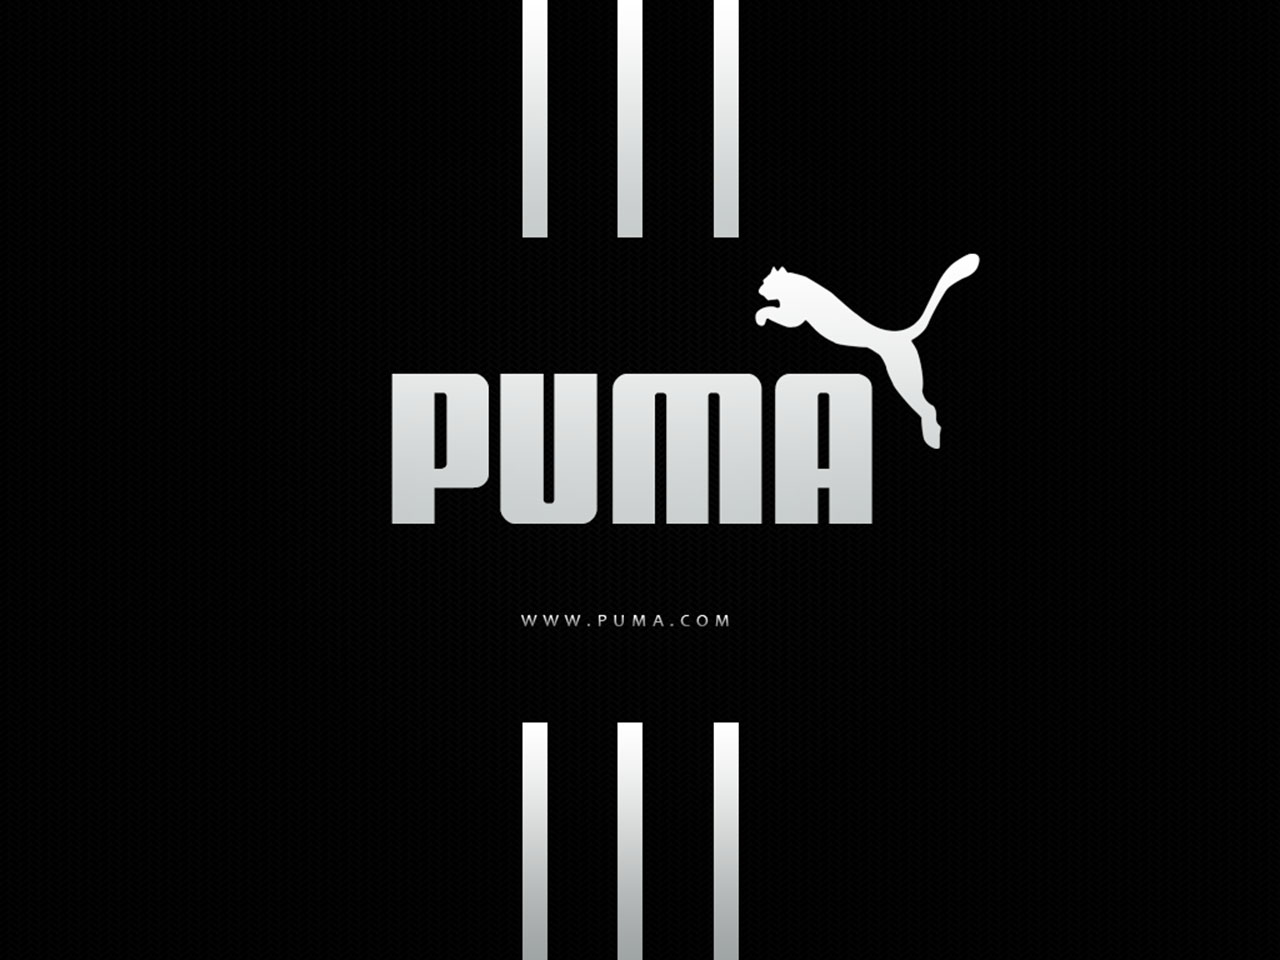 Puma raises sales outlook 2014 sneaker sales rebound